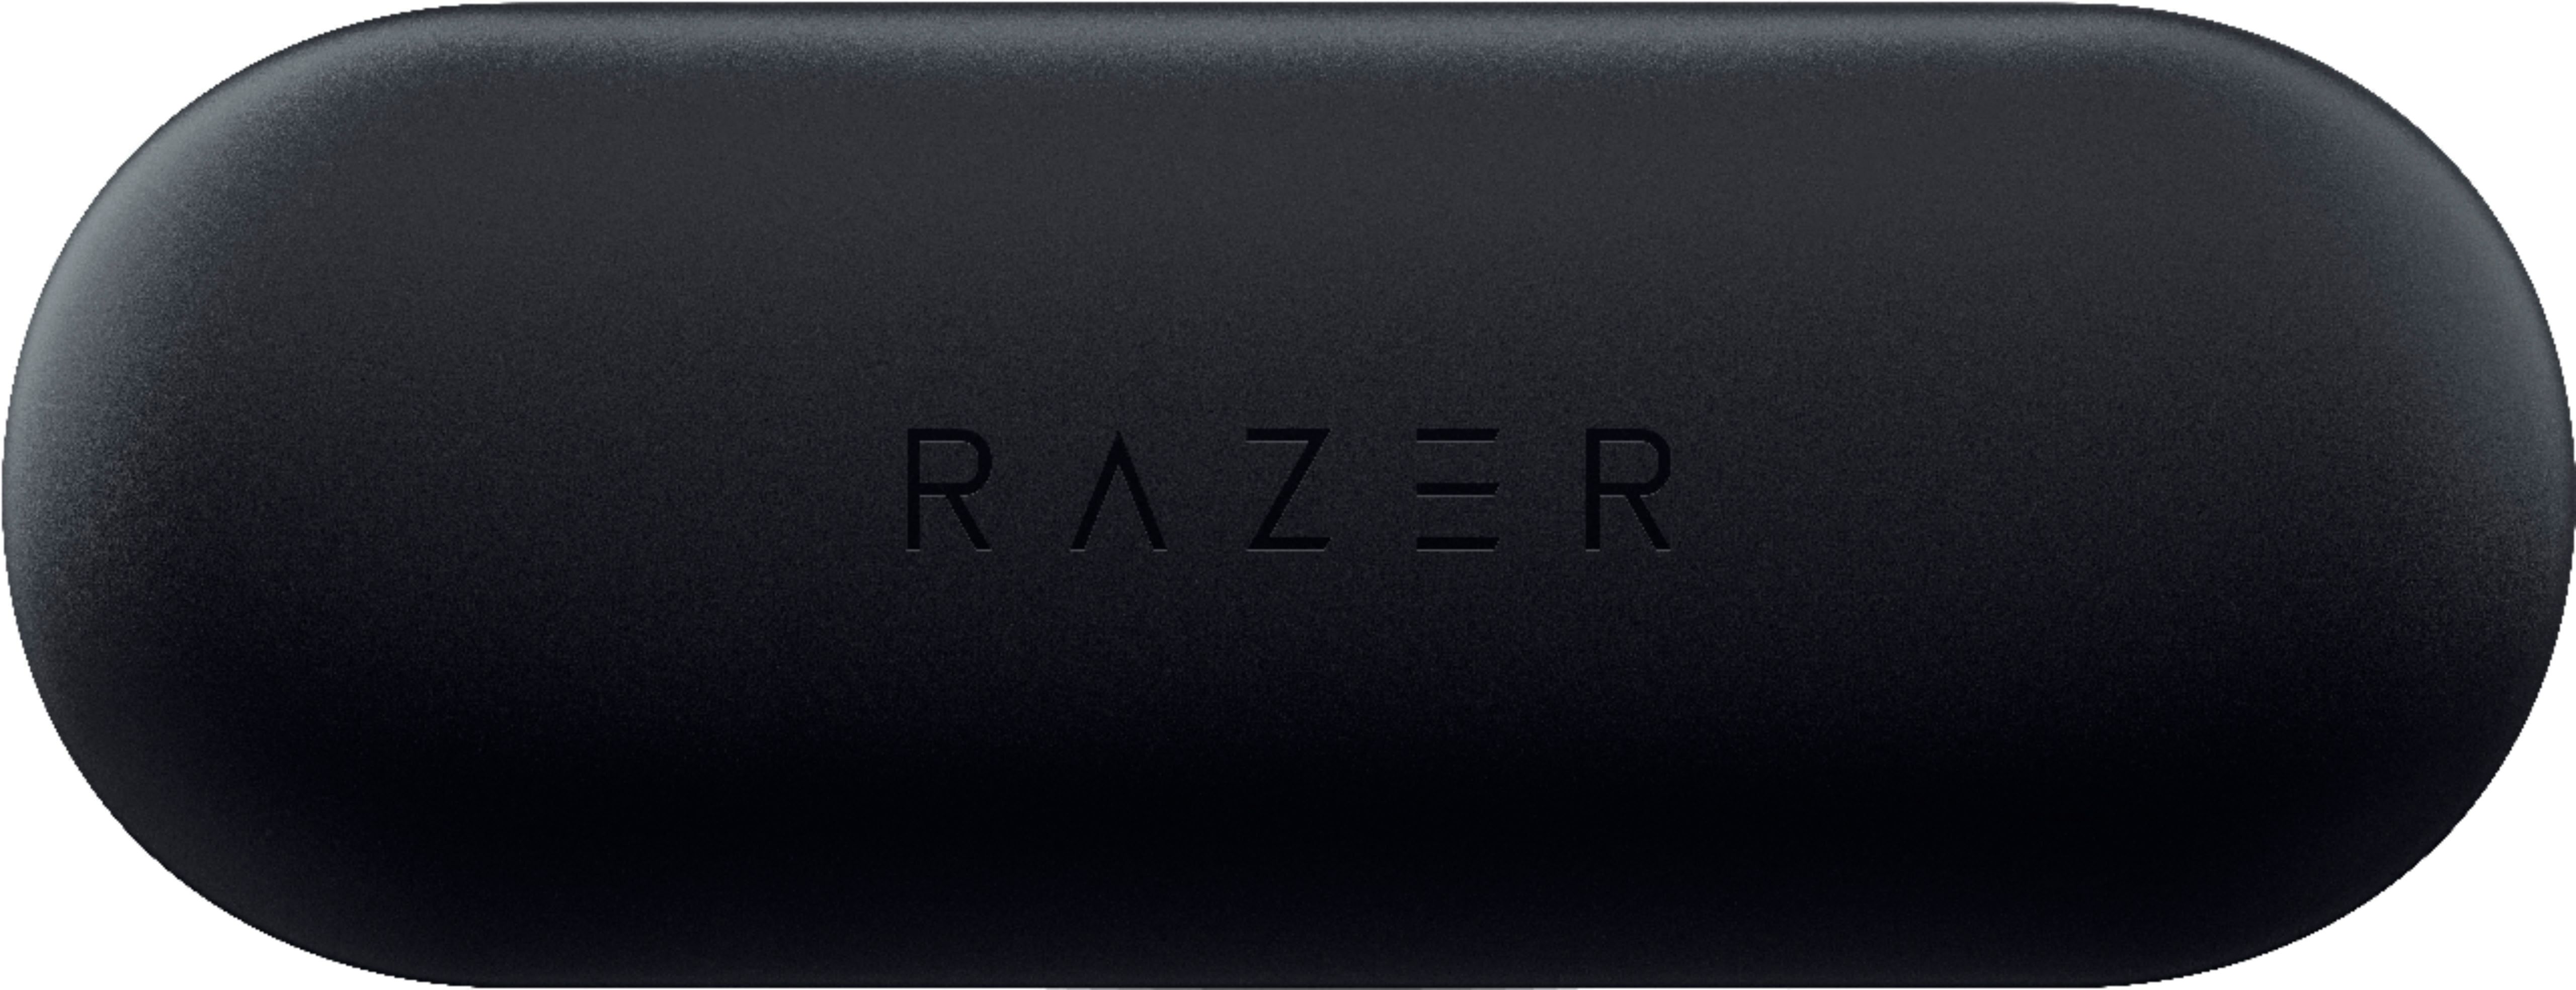 Razer Hammerhead True Wireless Earbuds Bluetooth Waterproof for Gaming